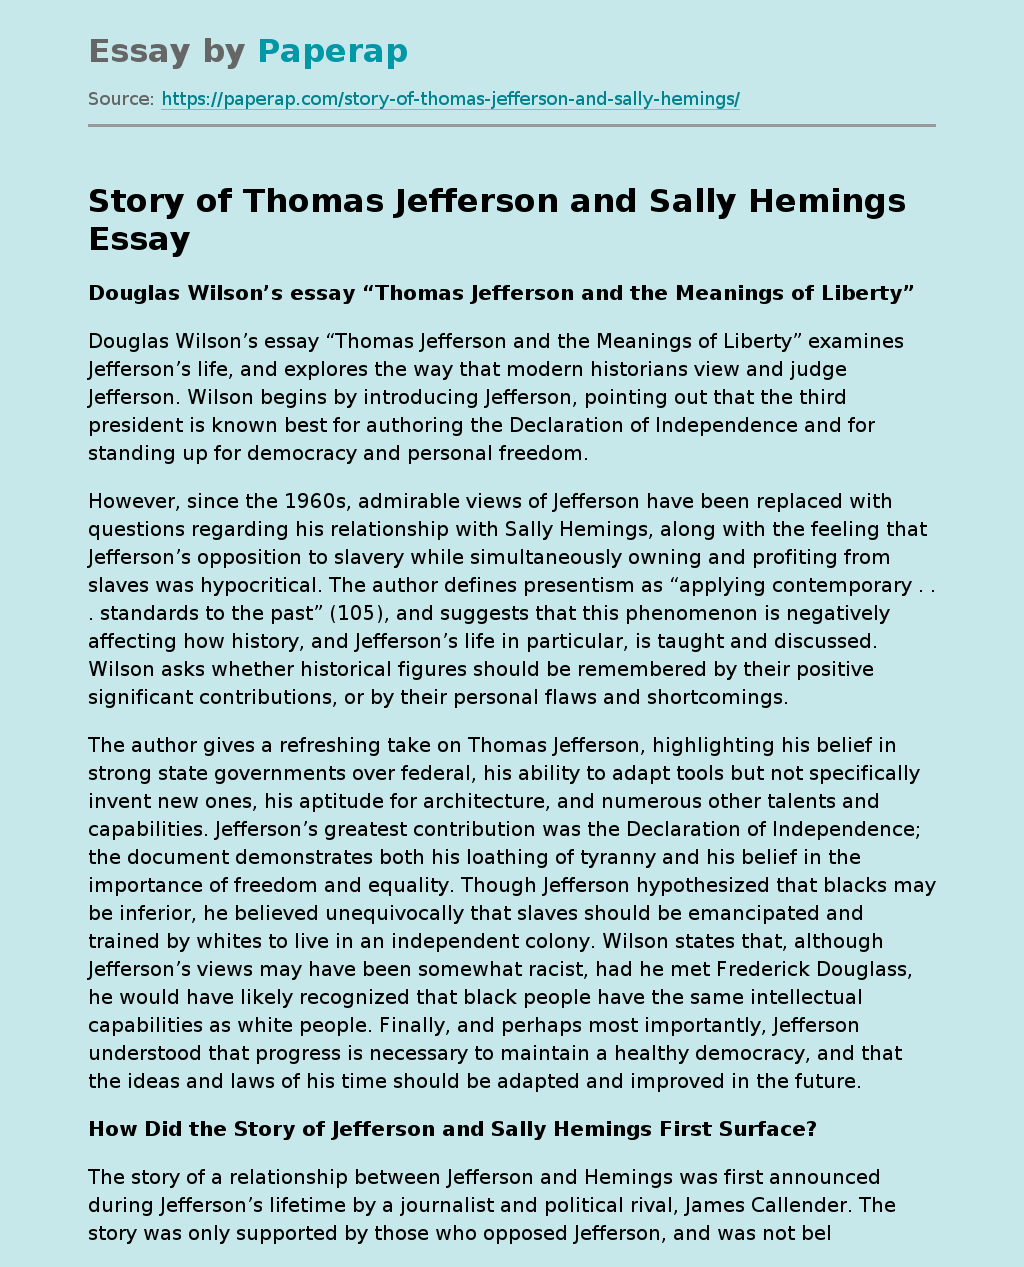 Story of Thomas Jefferson and Sally Hemings